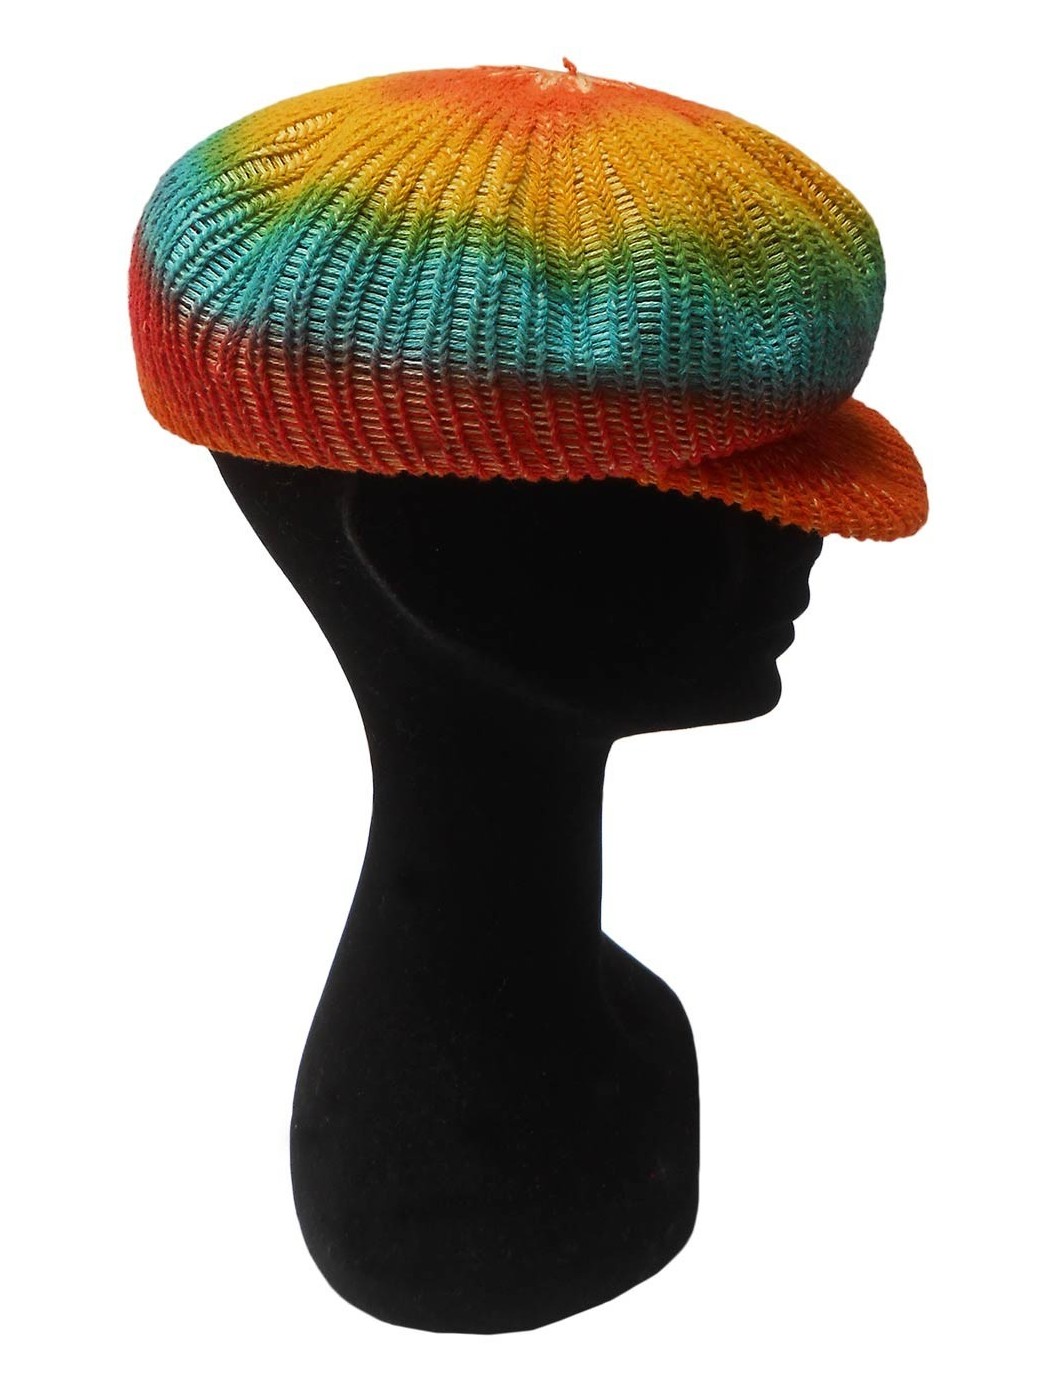 MODA DONNA Accessori Cappello e berretto Multicolor Tantrend Pamela raffia multicolor sconto 71% Multicolor Unica 